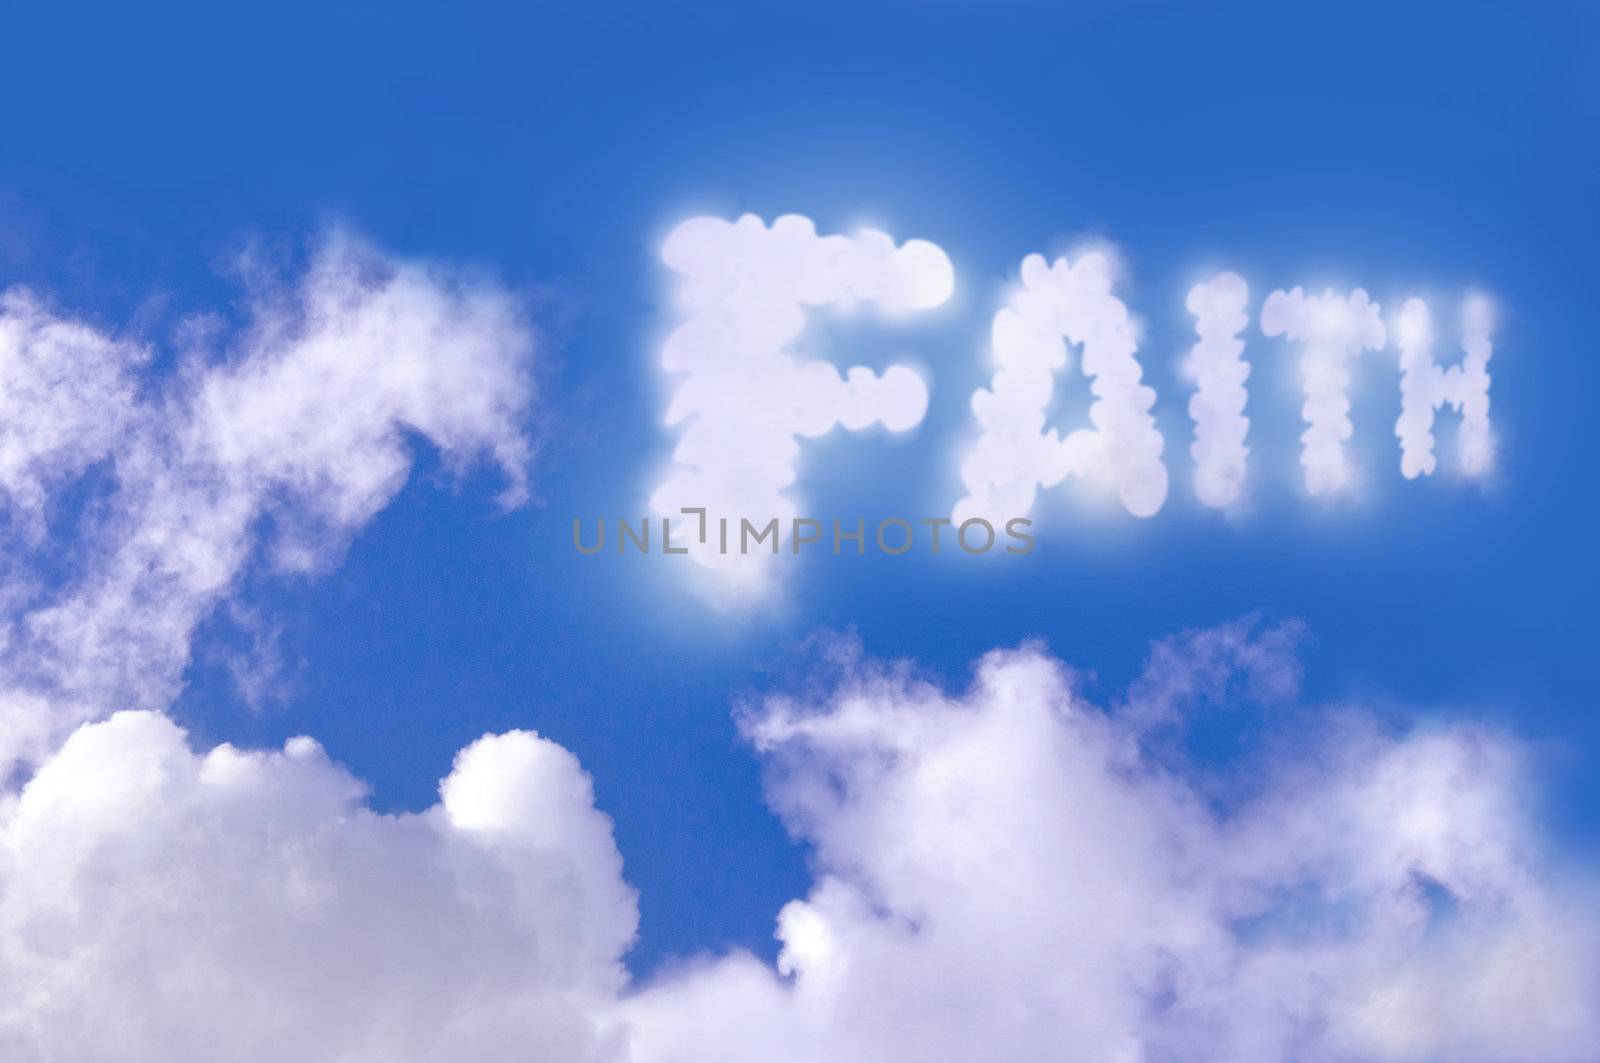 Faith cloud in the sky against a blue sky